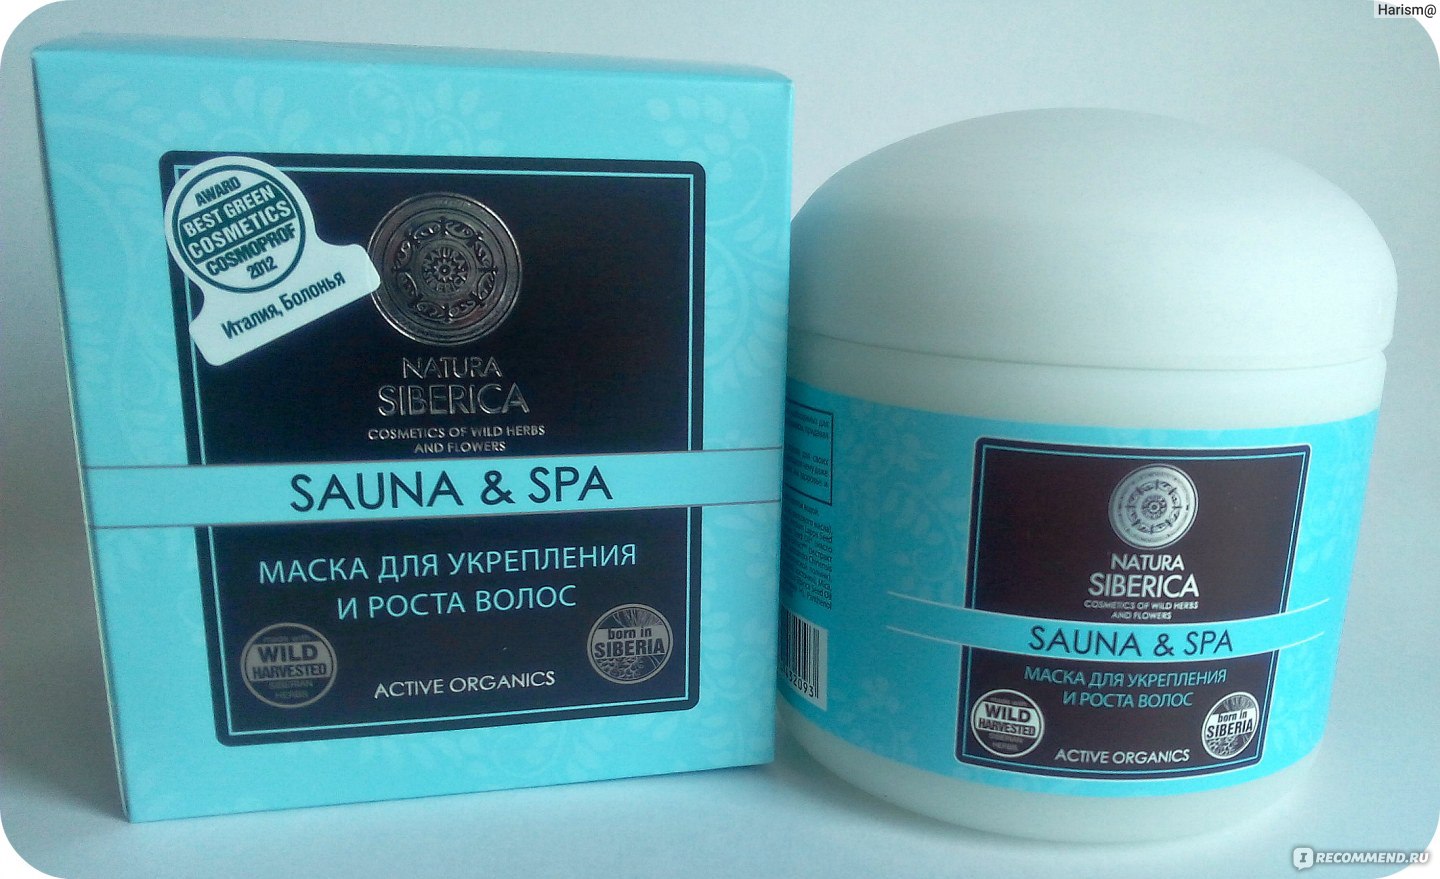 Маска для волос natura siberica sauna spa для защиты и восстановления волос